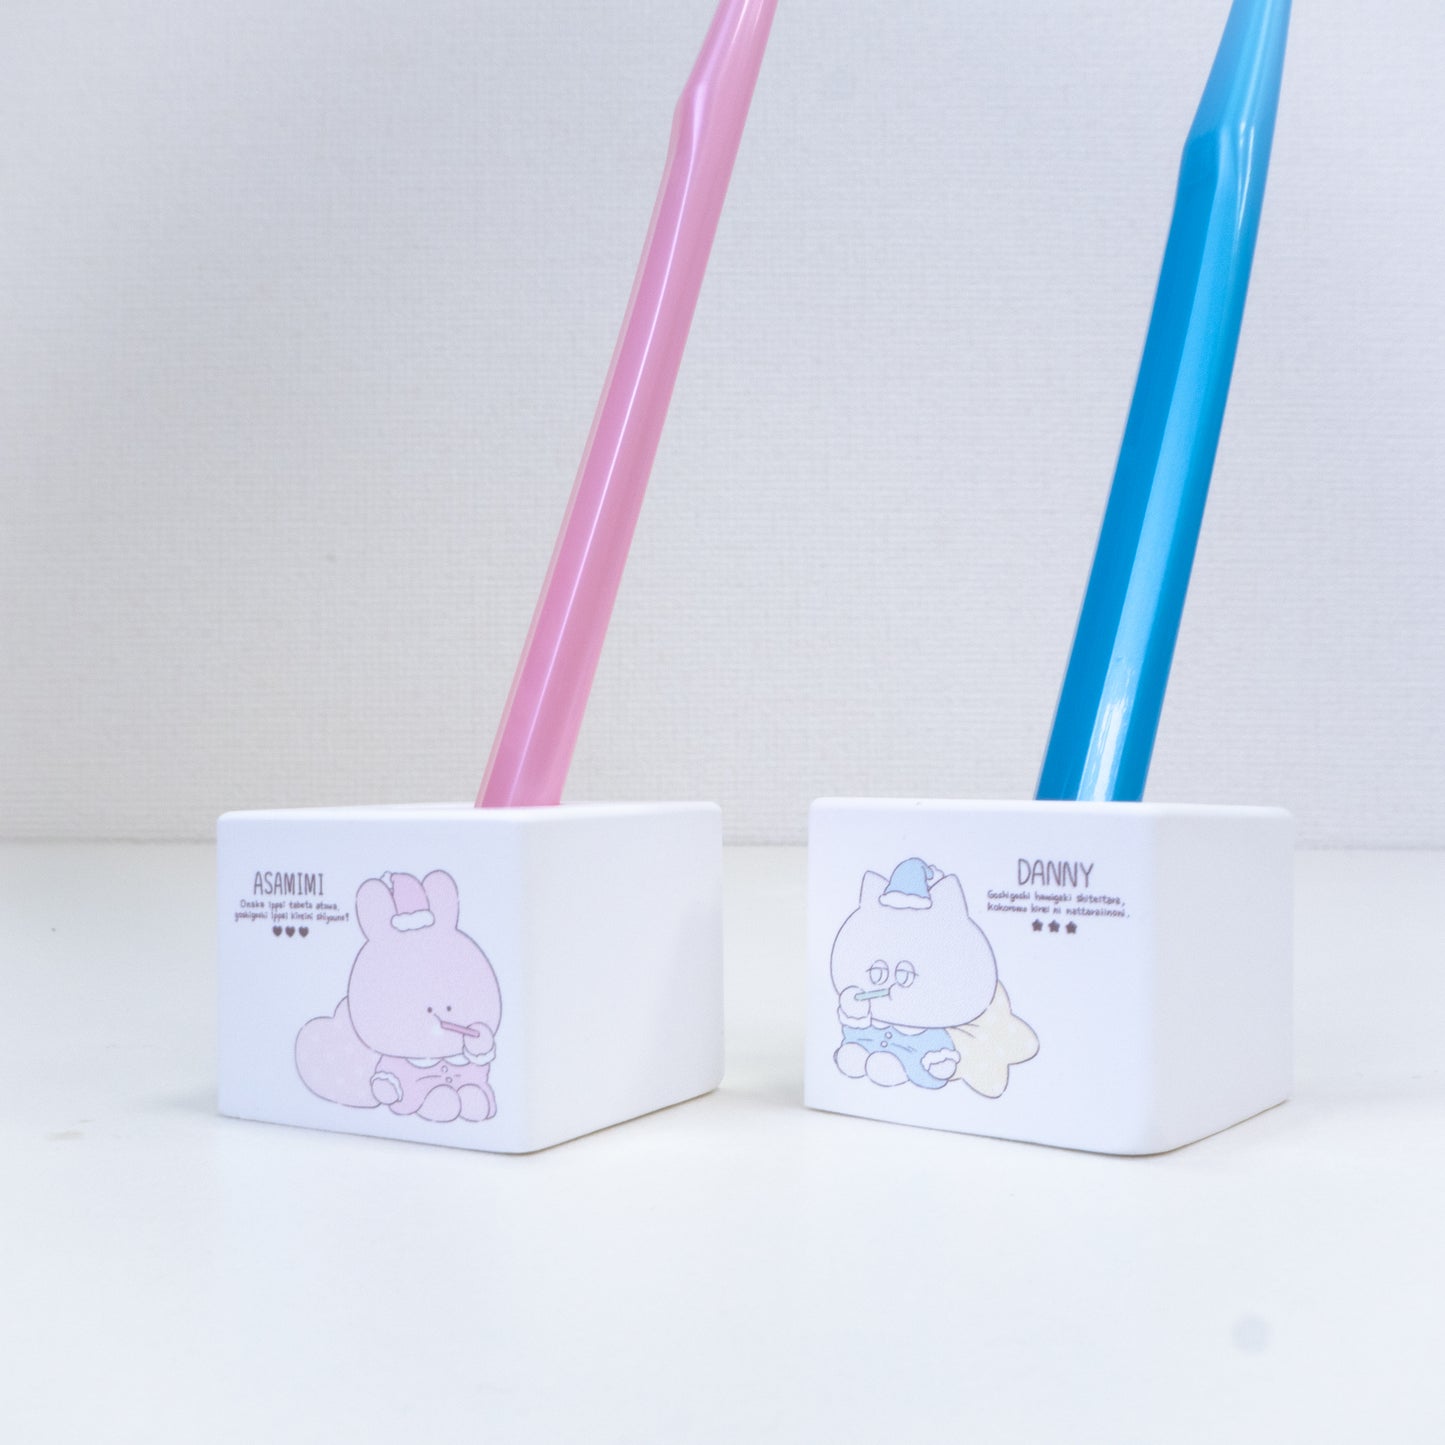 [Asamimi-chan] Zahnbürstenständer aus Kieselgur [Anfang Oktober versandt]